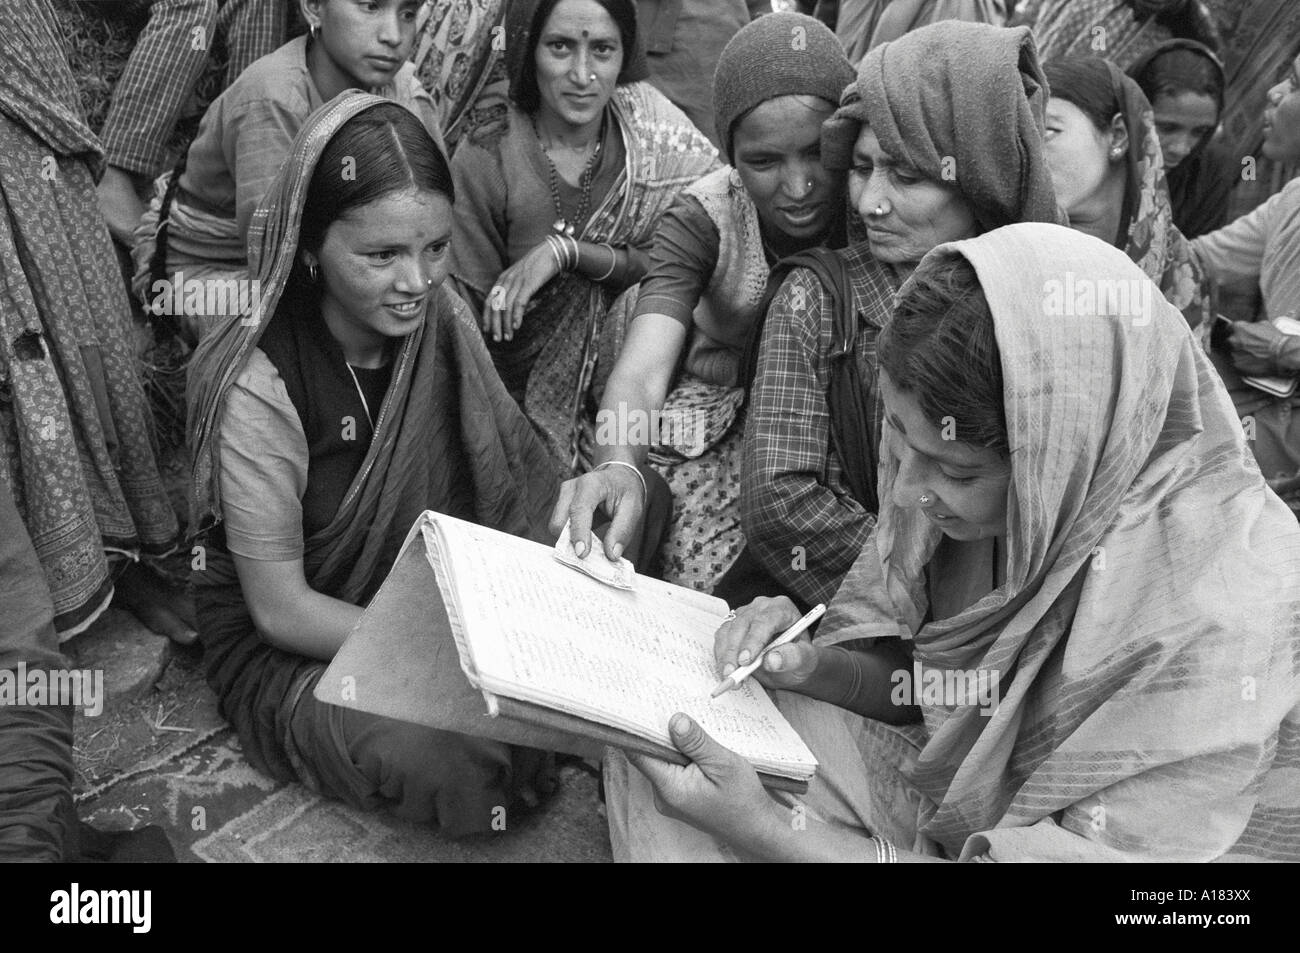 B/W d'un groupe de femmes dans une coopérative rurale impliquant des petites entreprises qui vérifient leurs comptes. Tehri Garhwal, N. Inde Banque D'Images